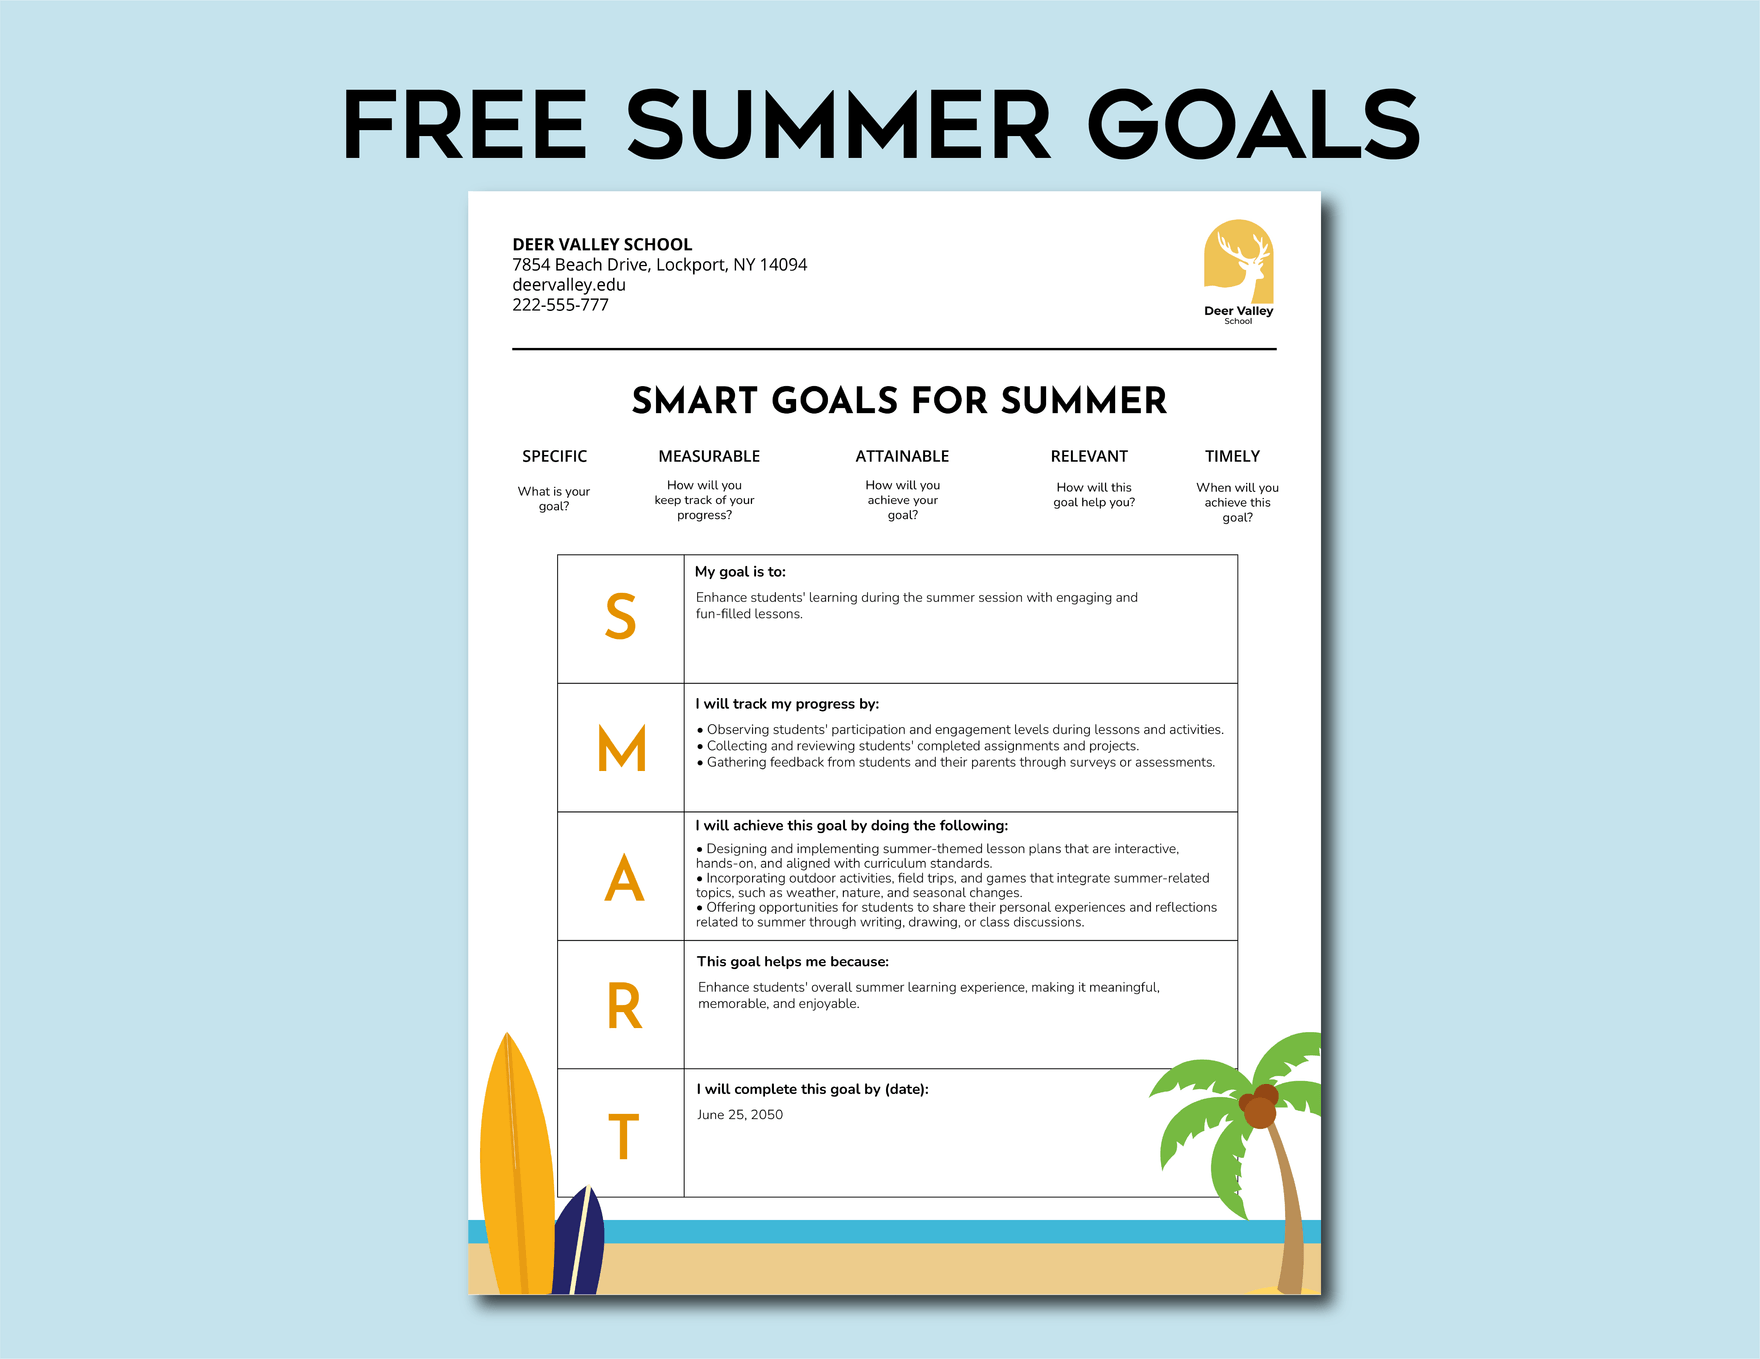 Summer Goals